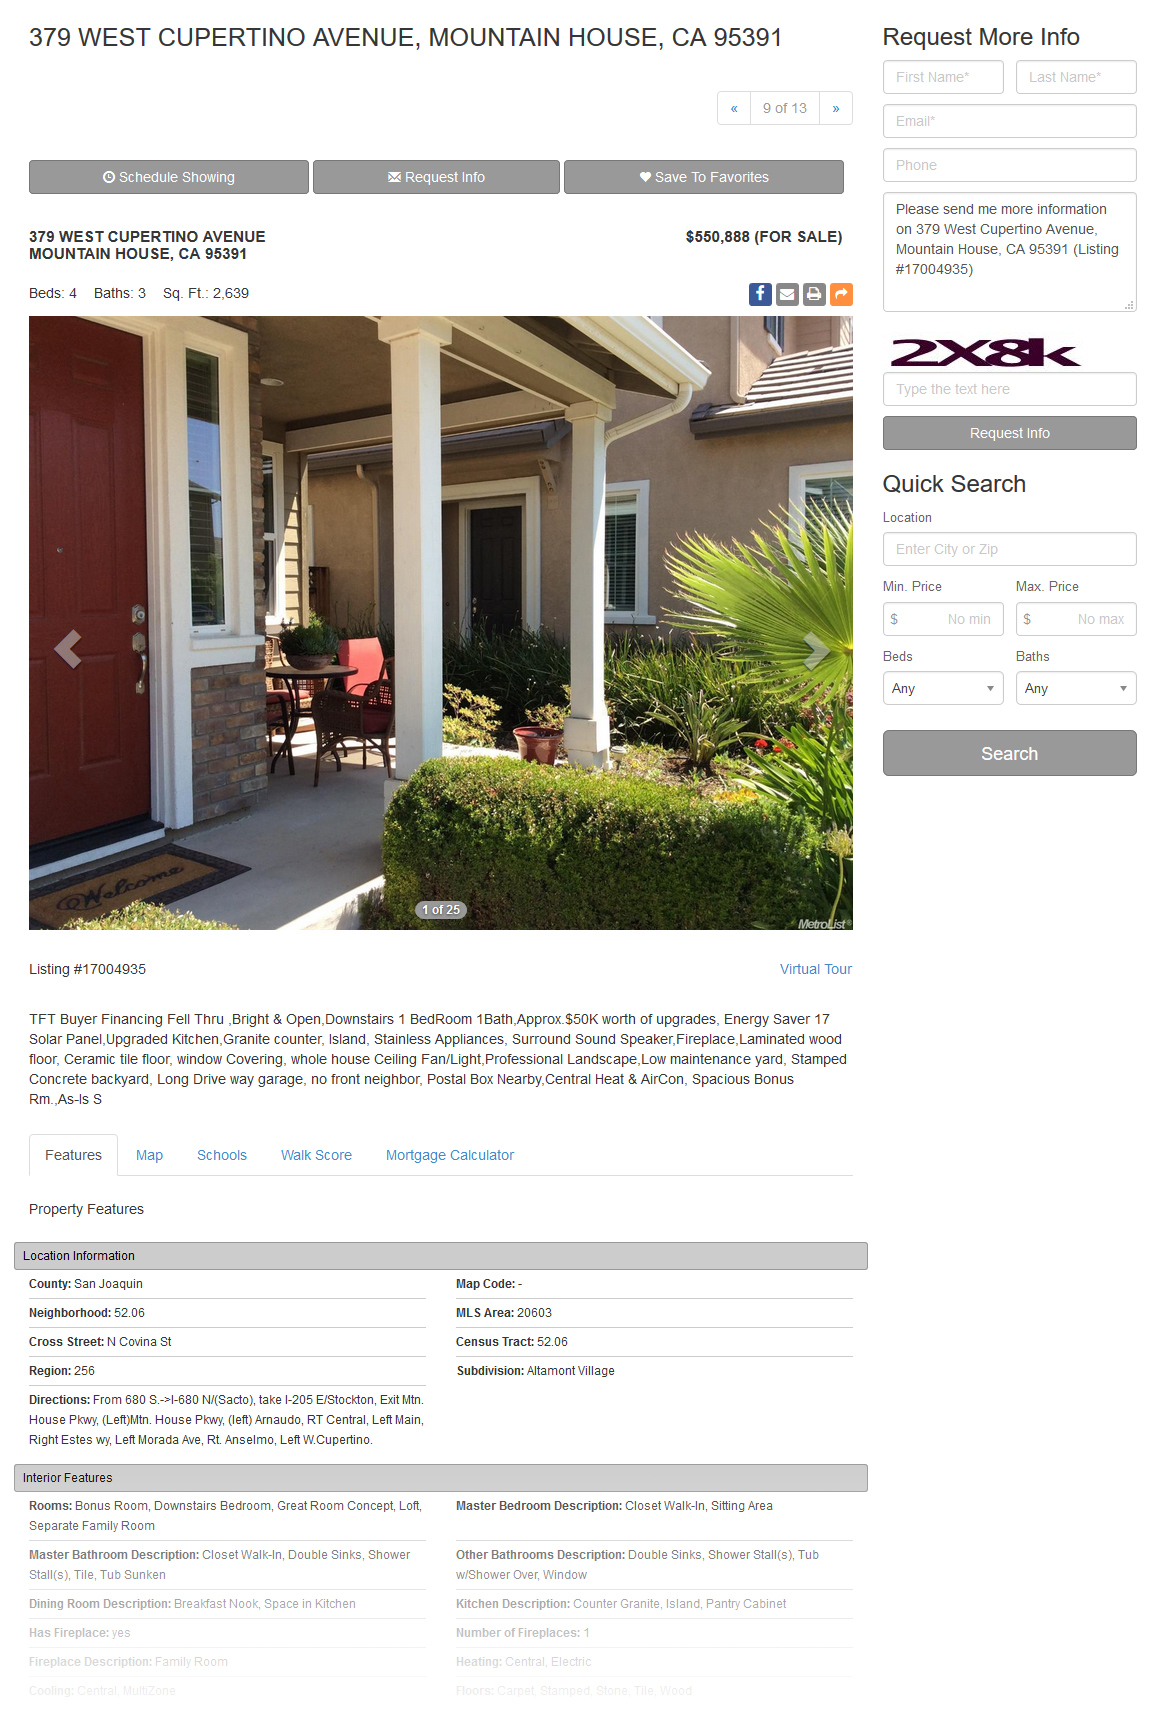 Real Estate Website Templates IDX MLS Integration Real Estate Designer